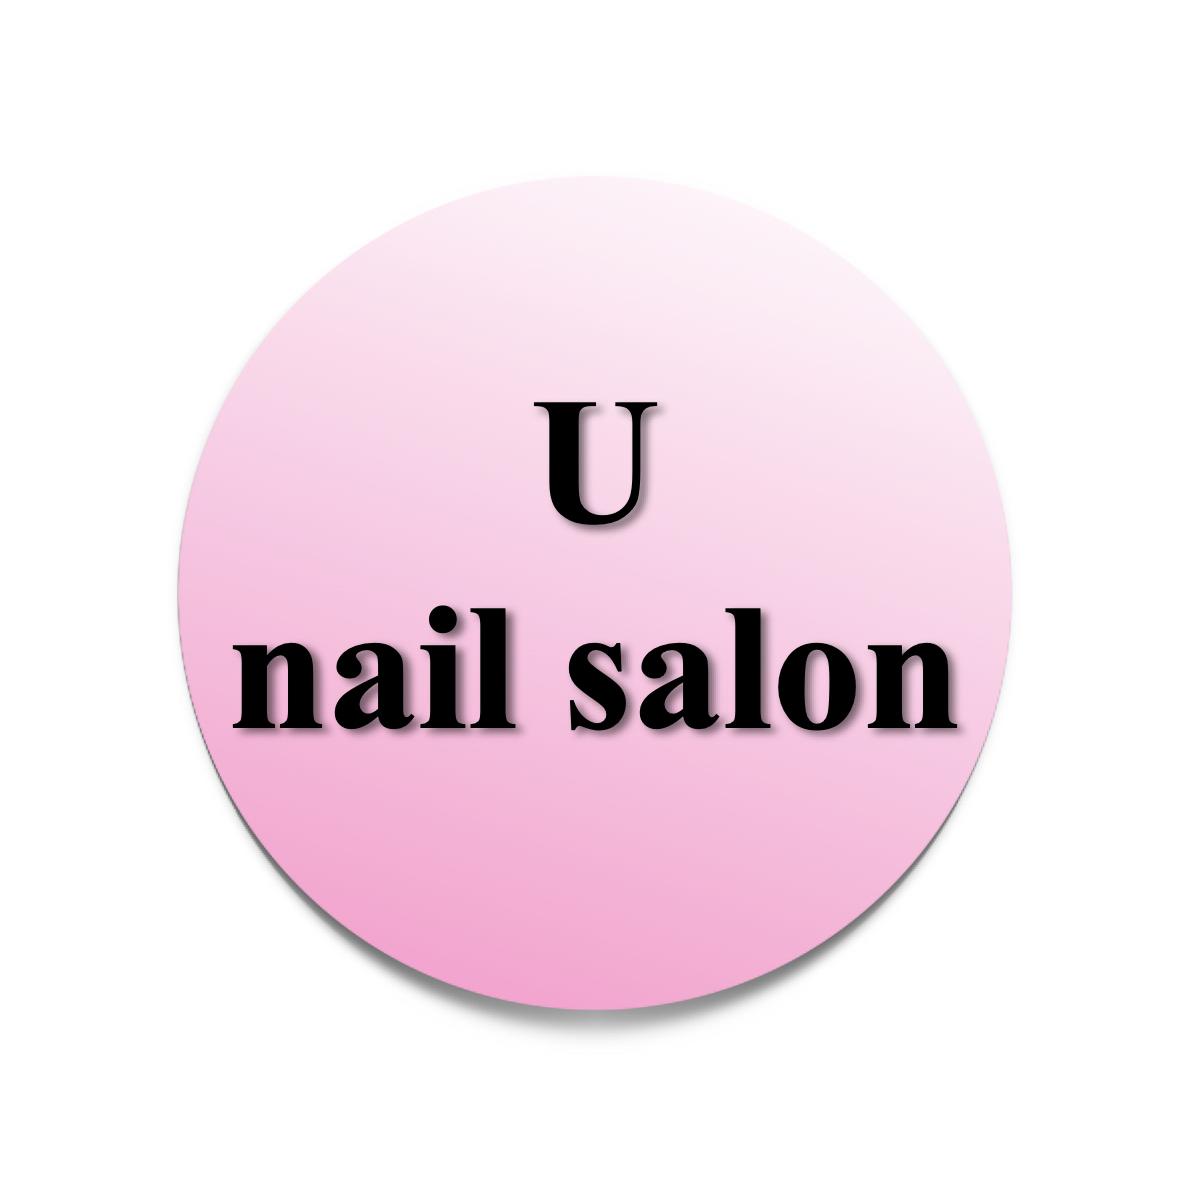 U nail salon